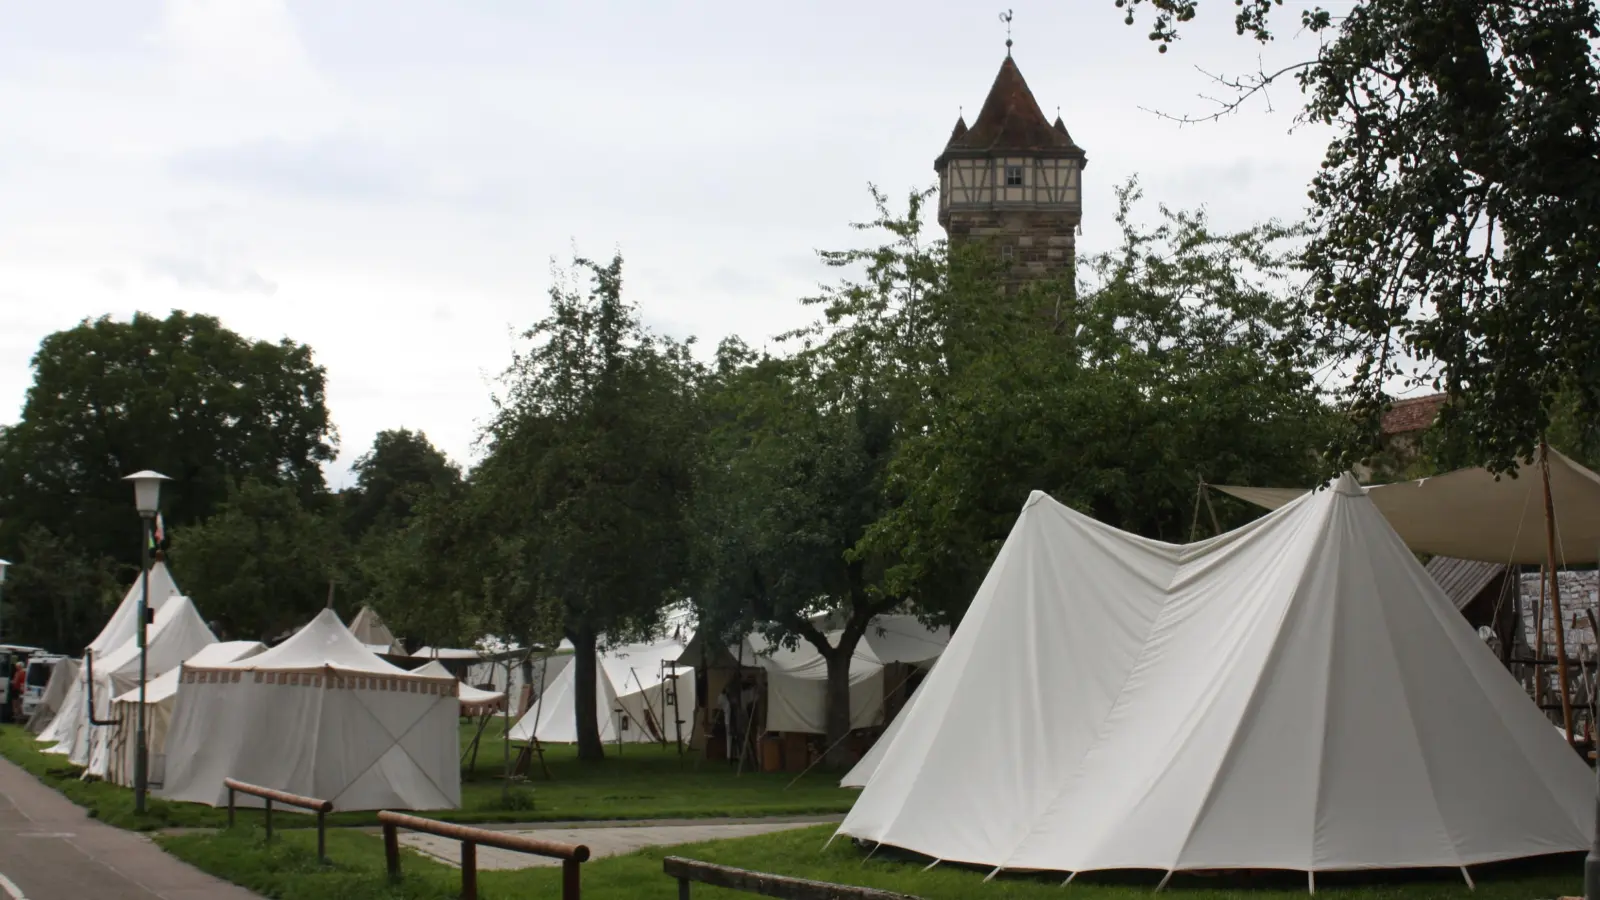 Das Feldlager bei den Reichsstadttagen umfasste zahlreiche Zelte. Eines davon brannte. Wie es zu dem Feuer kam, ist weiter ungeklärt. (Foto: Anna Beigel)